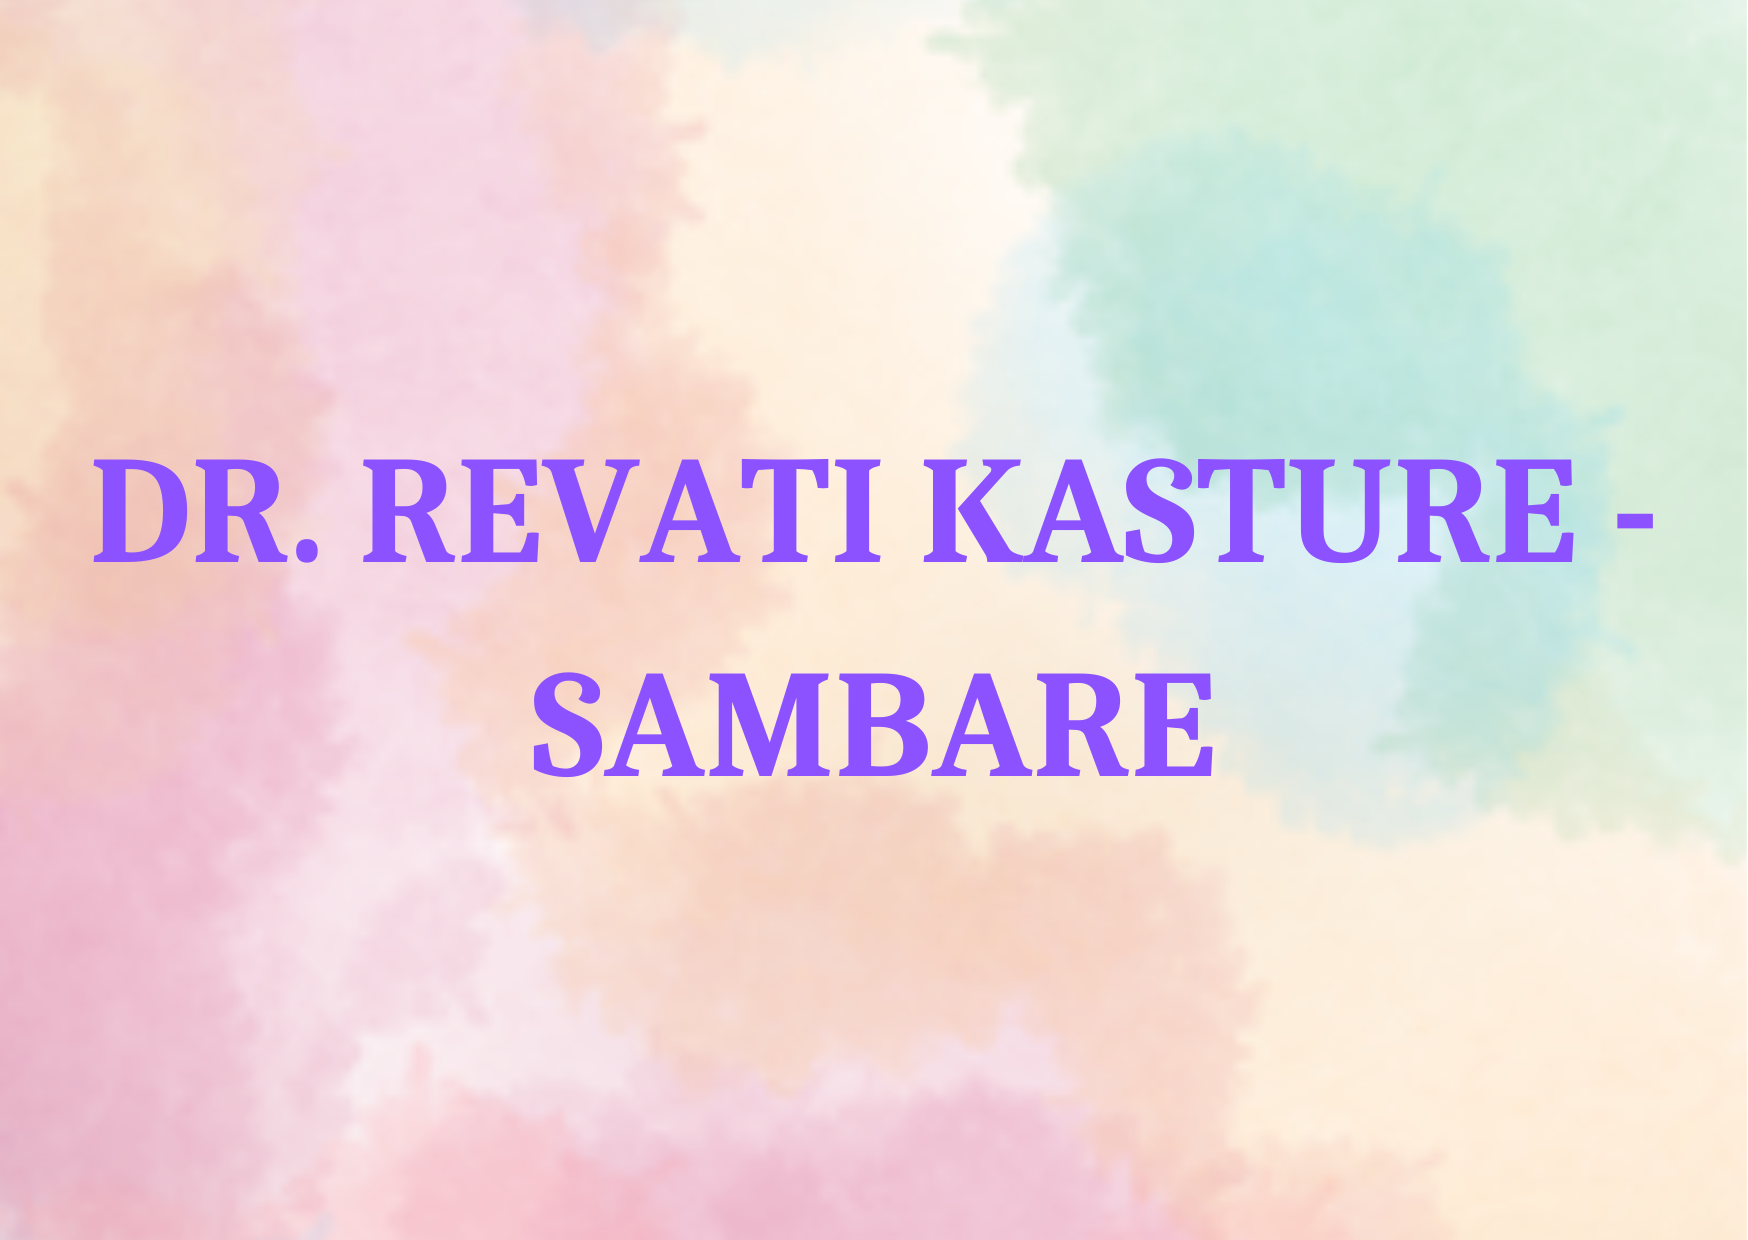 DR. REVATI KASTURE - SAMBARE,   